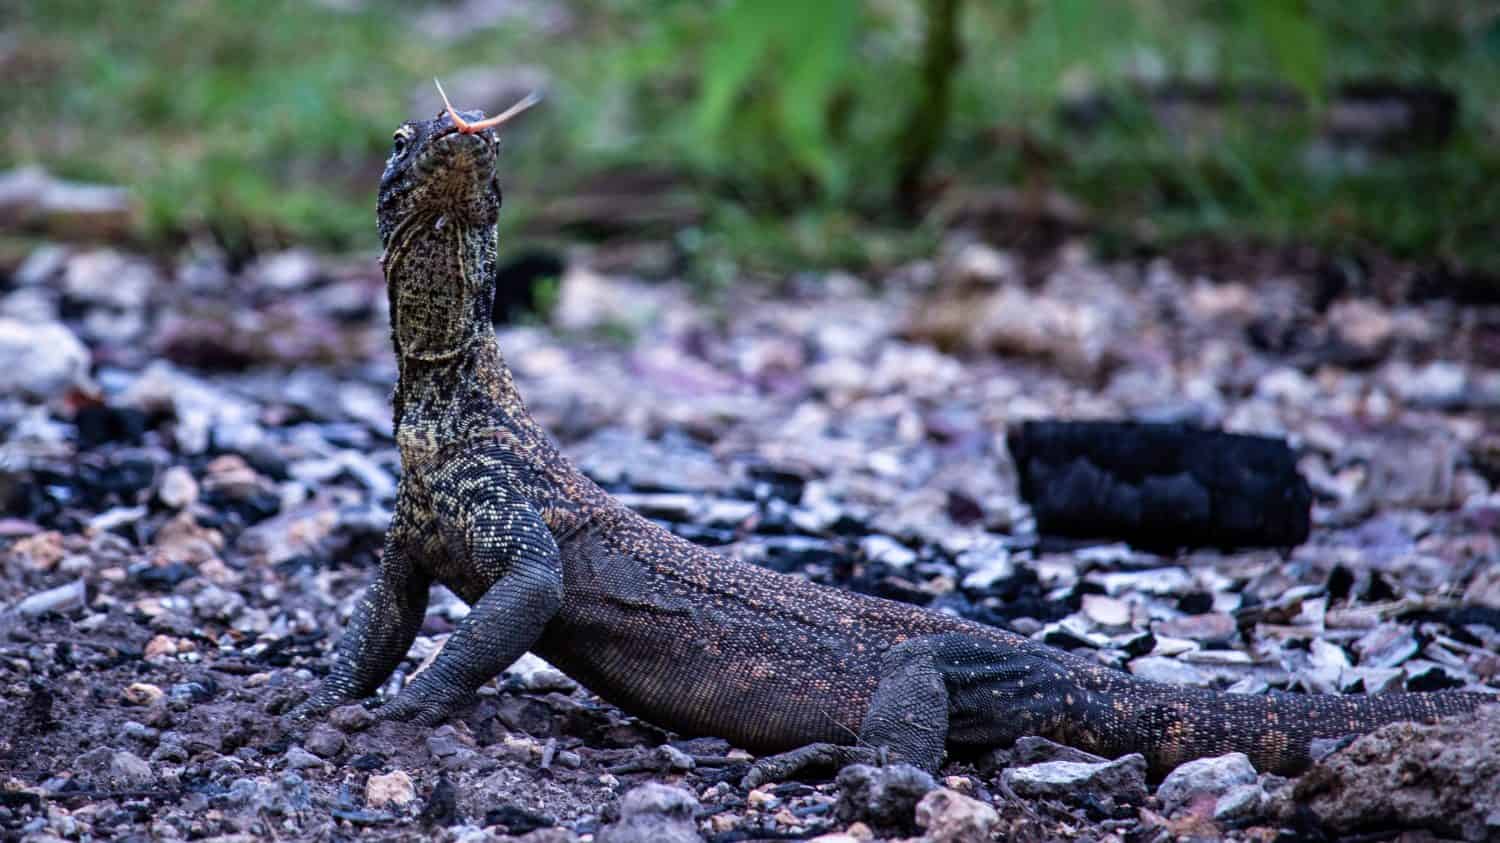 Baby Komodo dragon in Indonesia